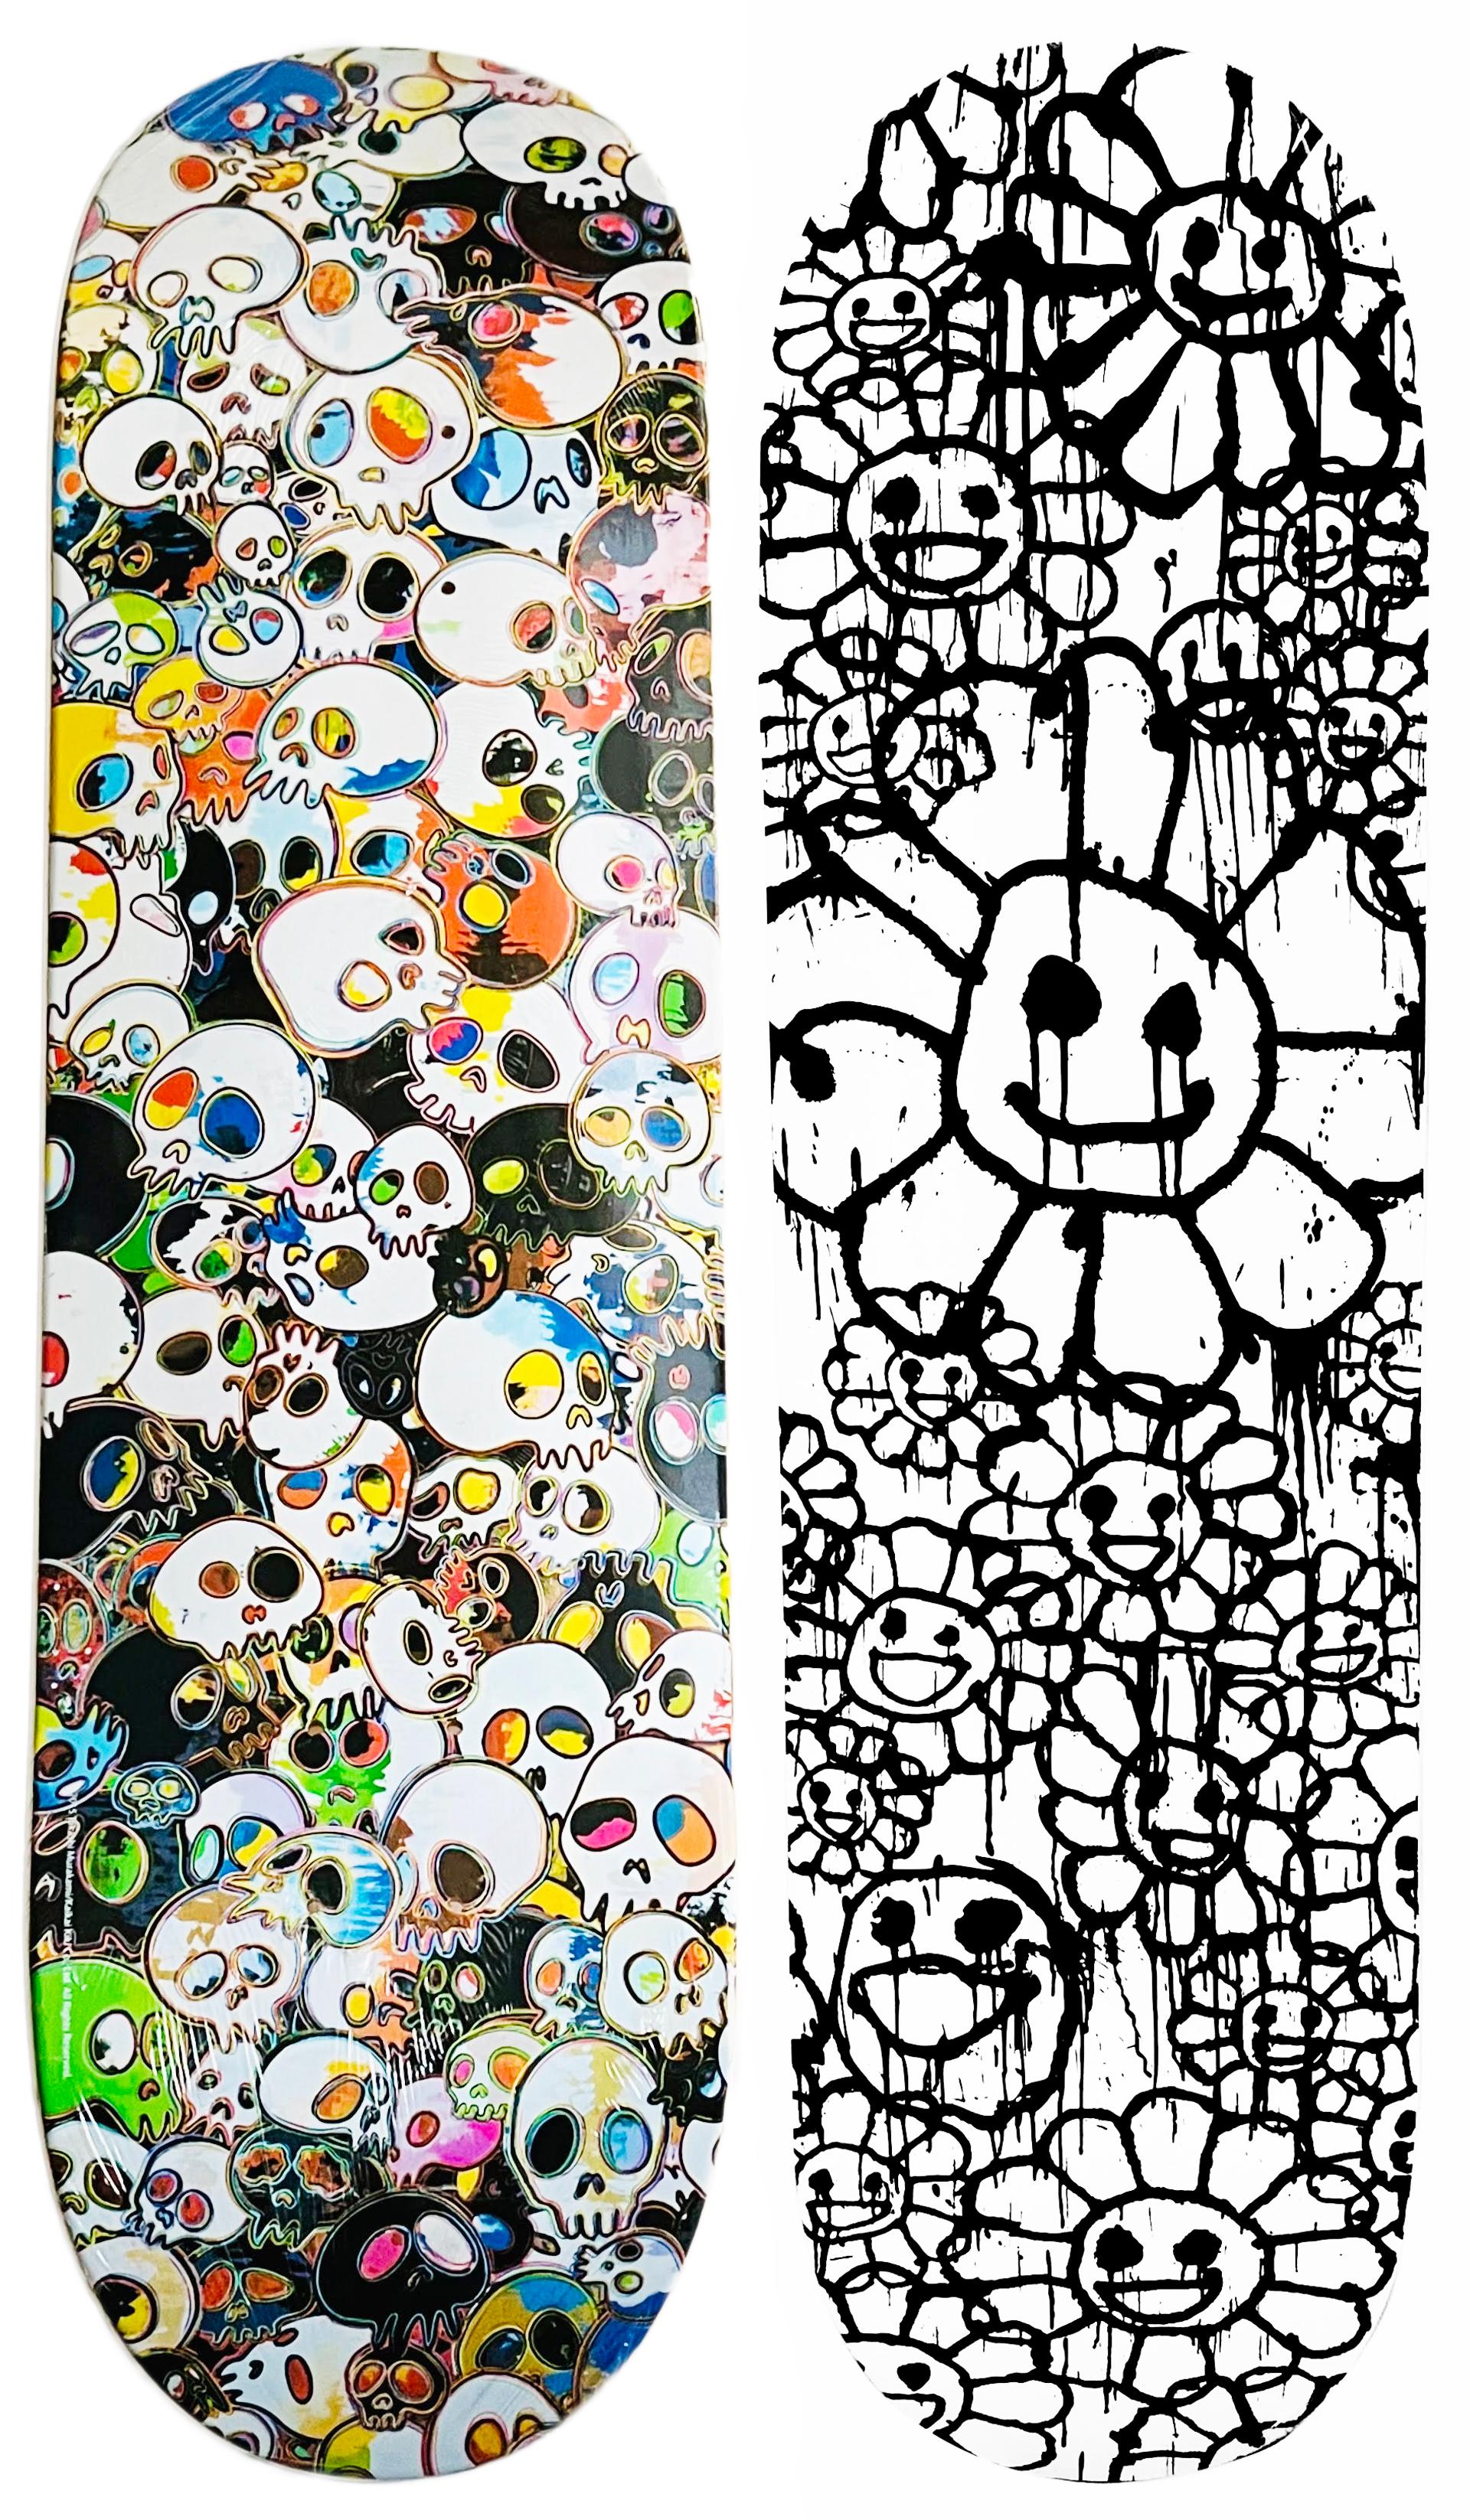 Takashi Murakami Skateboard-Decks: Satz von 2  Werke: 2015-2017:

Takashi Murakami Skulls Skateboard Deck 2015: Dieses limitierte Murakami-Skateboard mit hohem Sammlerwert wurde 2015 im Rahmen einer Collaboration zwischen Takashi Murakami und Vans